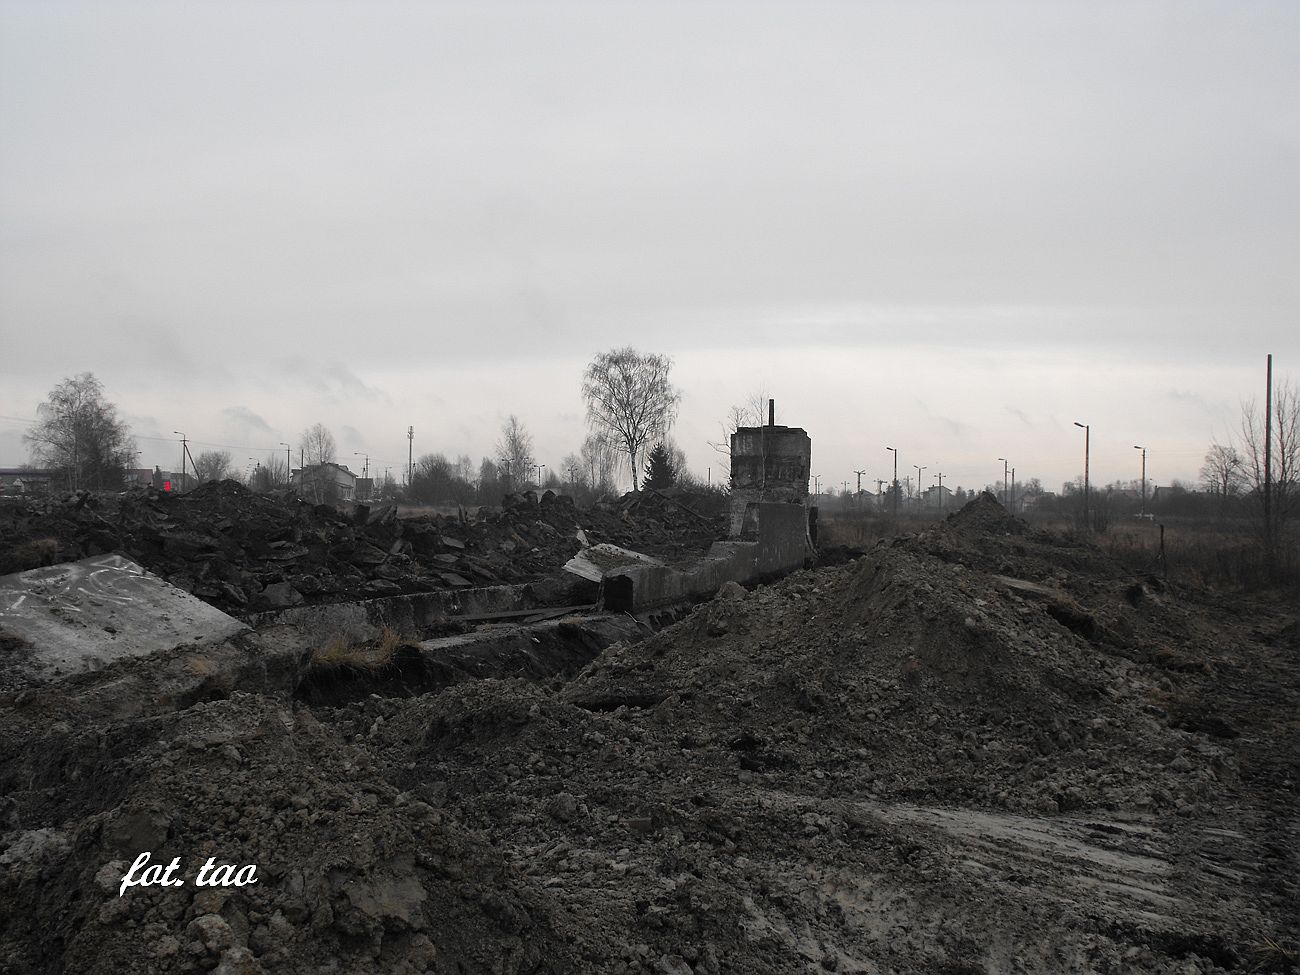 Wyburzanie obiektw PKP - parowozowni przy ul. Dworcowej, 16.12.2014 r.